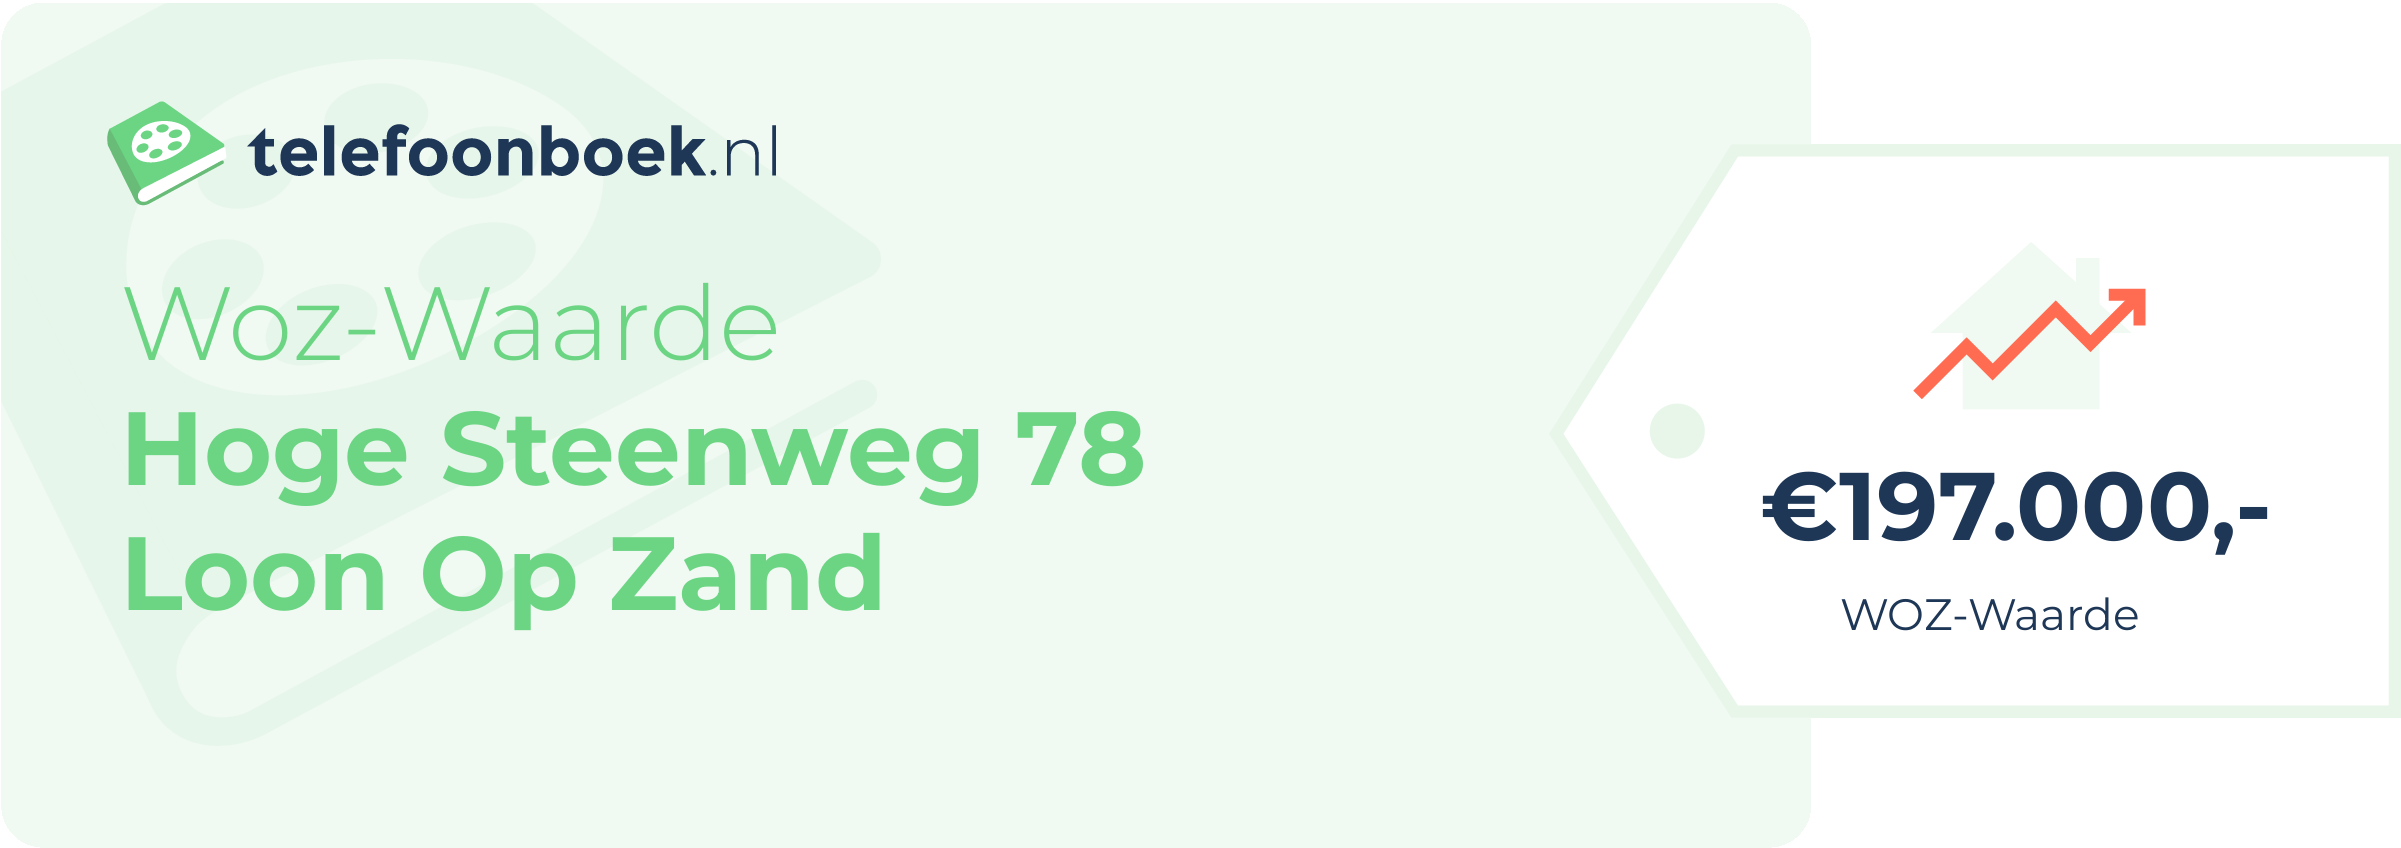 WOZ-waarde Hoge Steenweg 78 Loon Op Zand